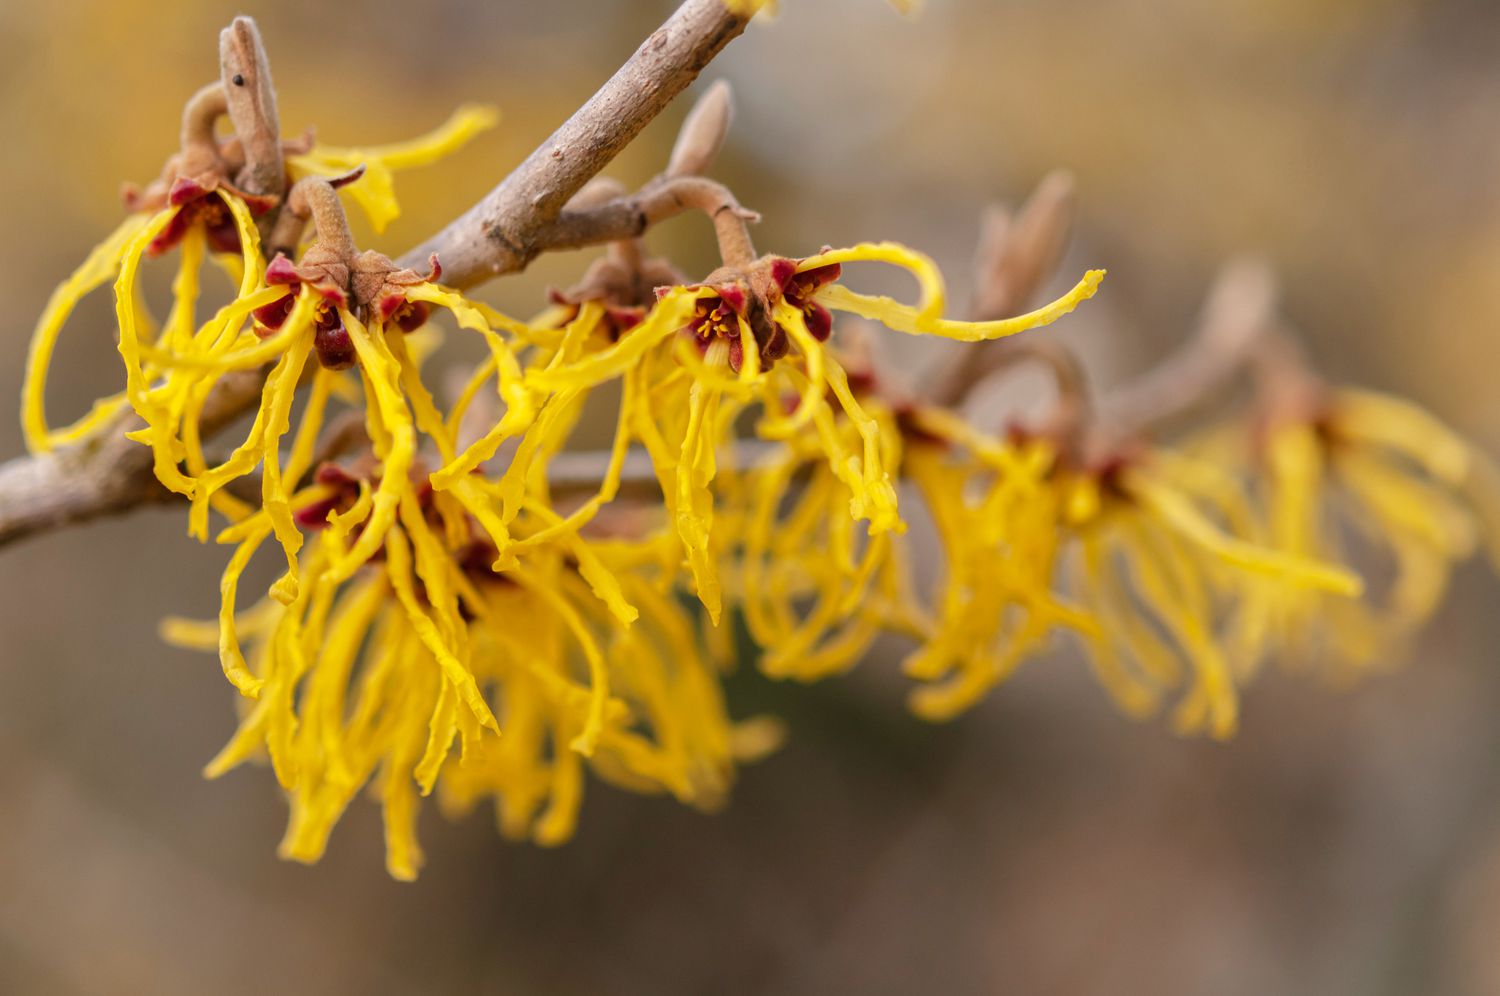 Vernalis Zaubernusszweig mit gelben, fadenförmigen Blüten in Großaufnahme